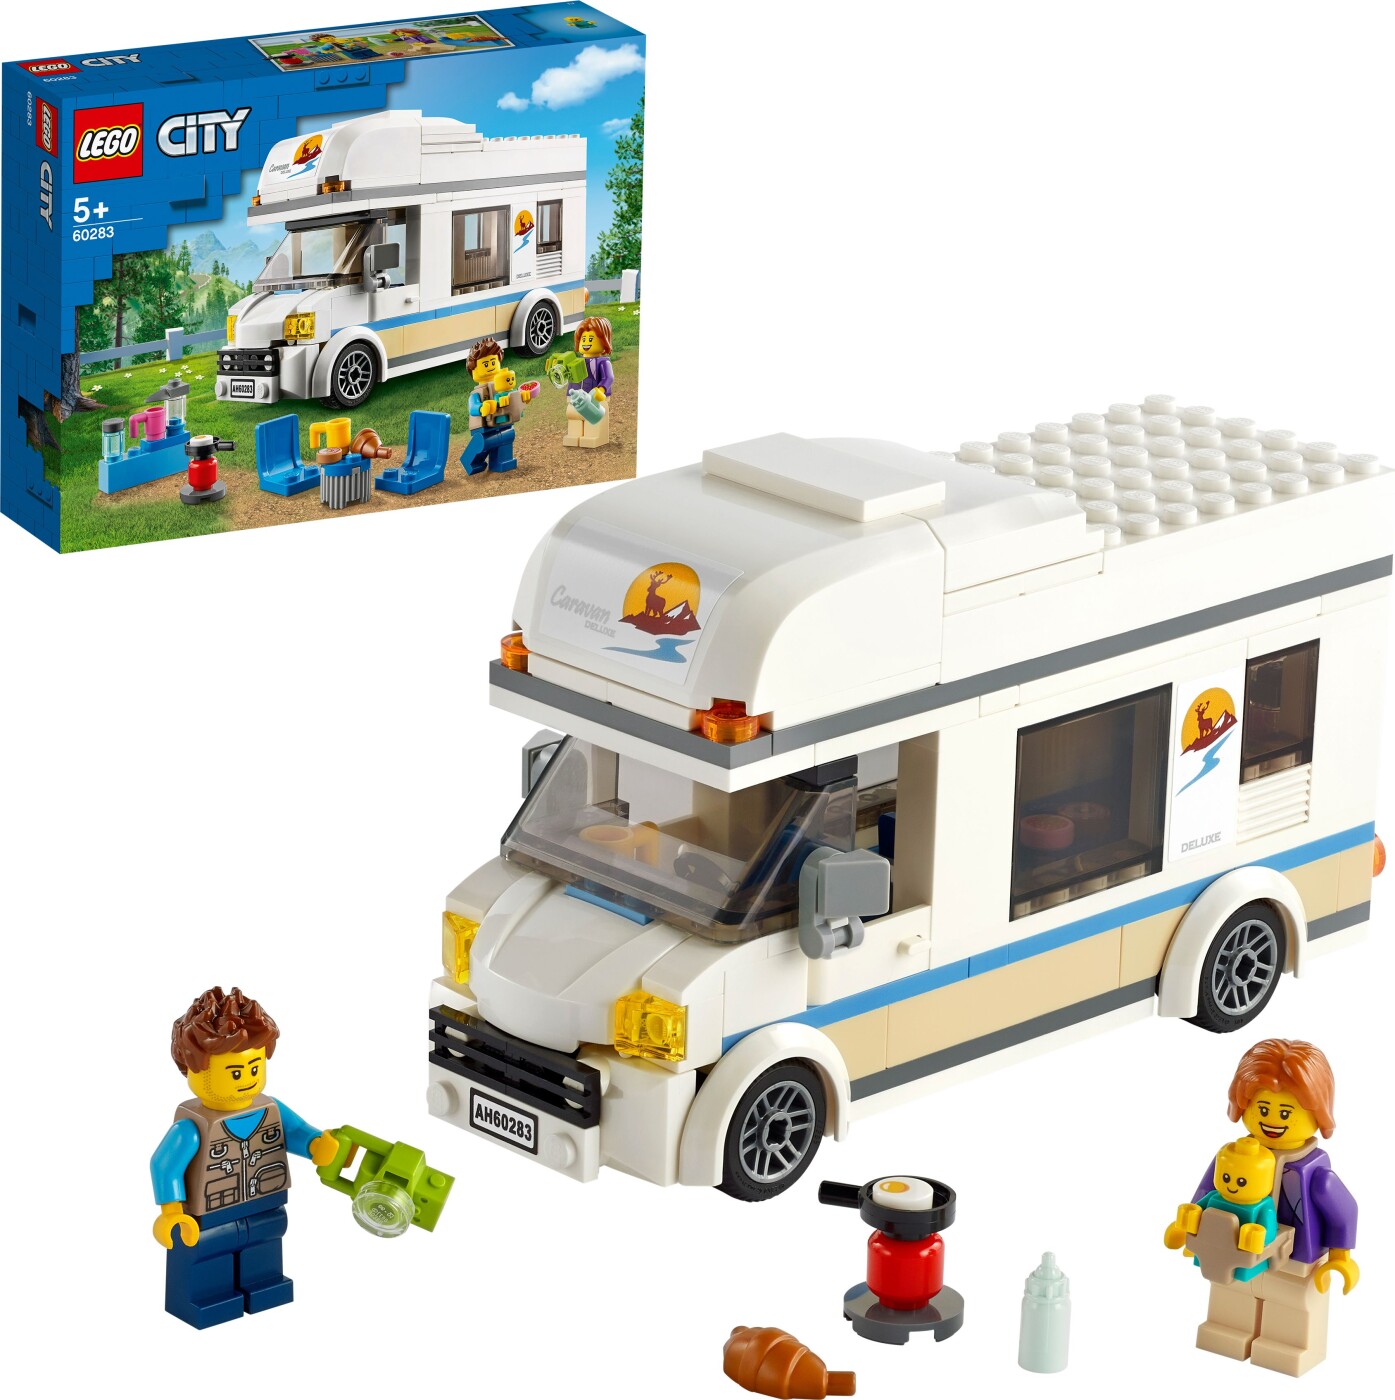 Billede af Lego City - Ferie-autocamper - 60283